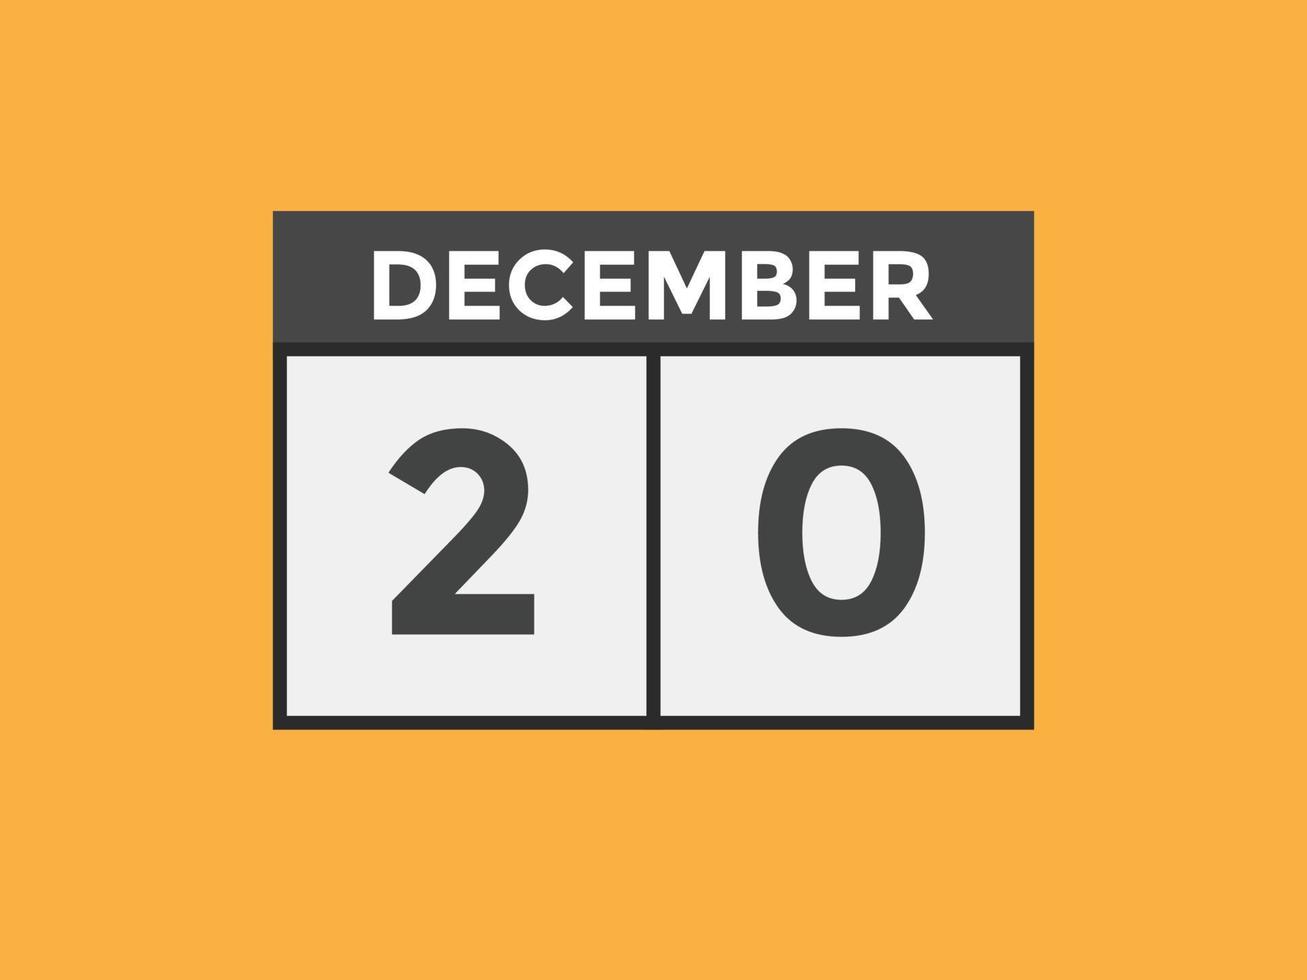 dicembre 20 calendario promemoria. 20 dicembre quotidiano calendario icona modello. calendario 20 dicembre icona design modello. vettore illustrazione